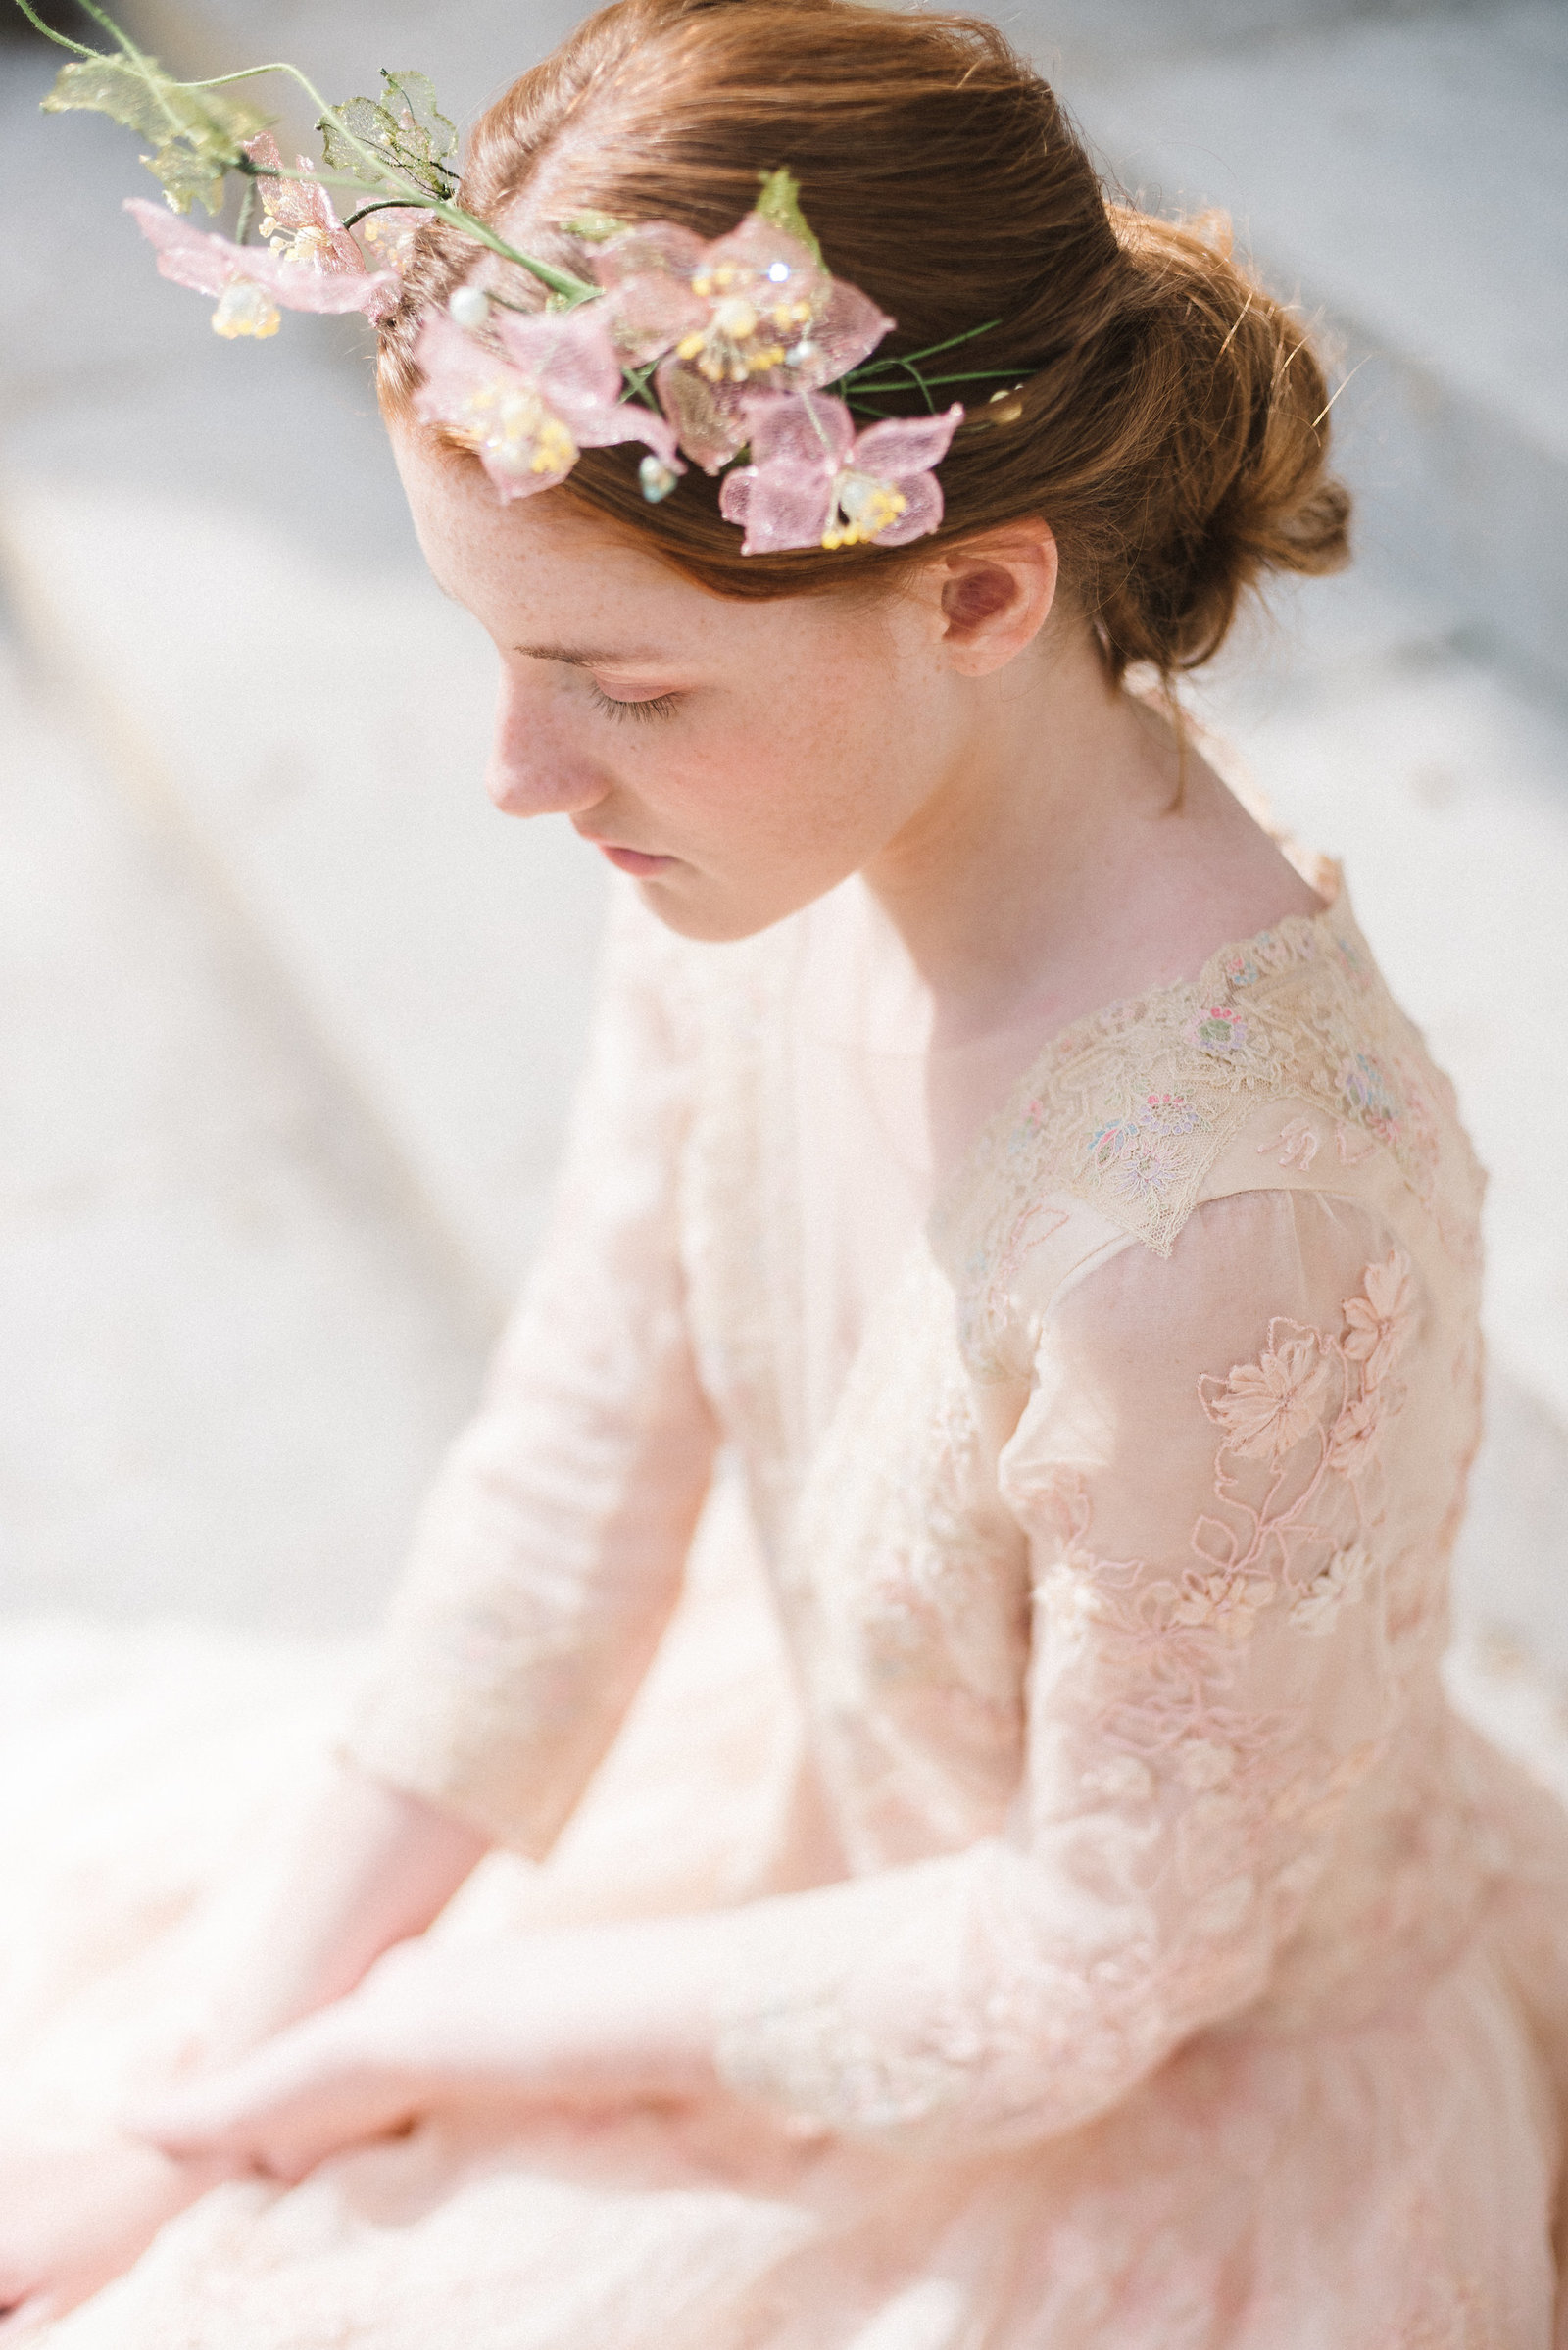 Titania-blush-flower-embroidered-wedding-dress-JoanneFlemingDesign-PhotographyByBea (5)